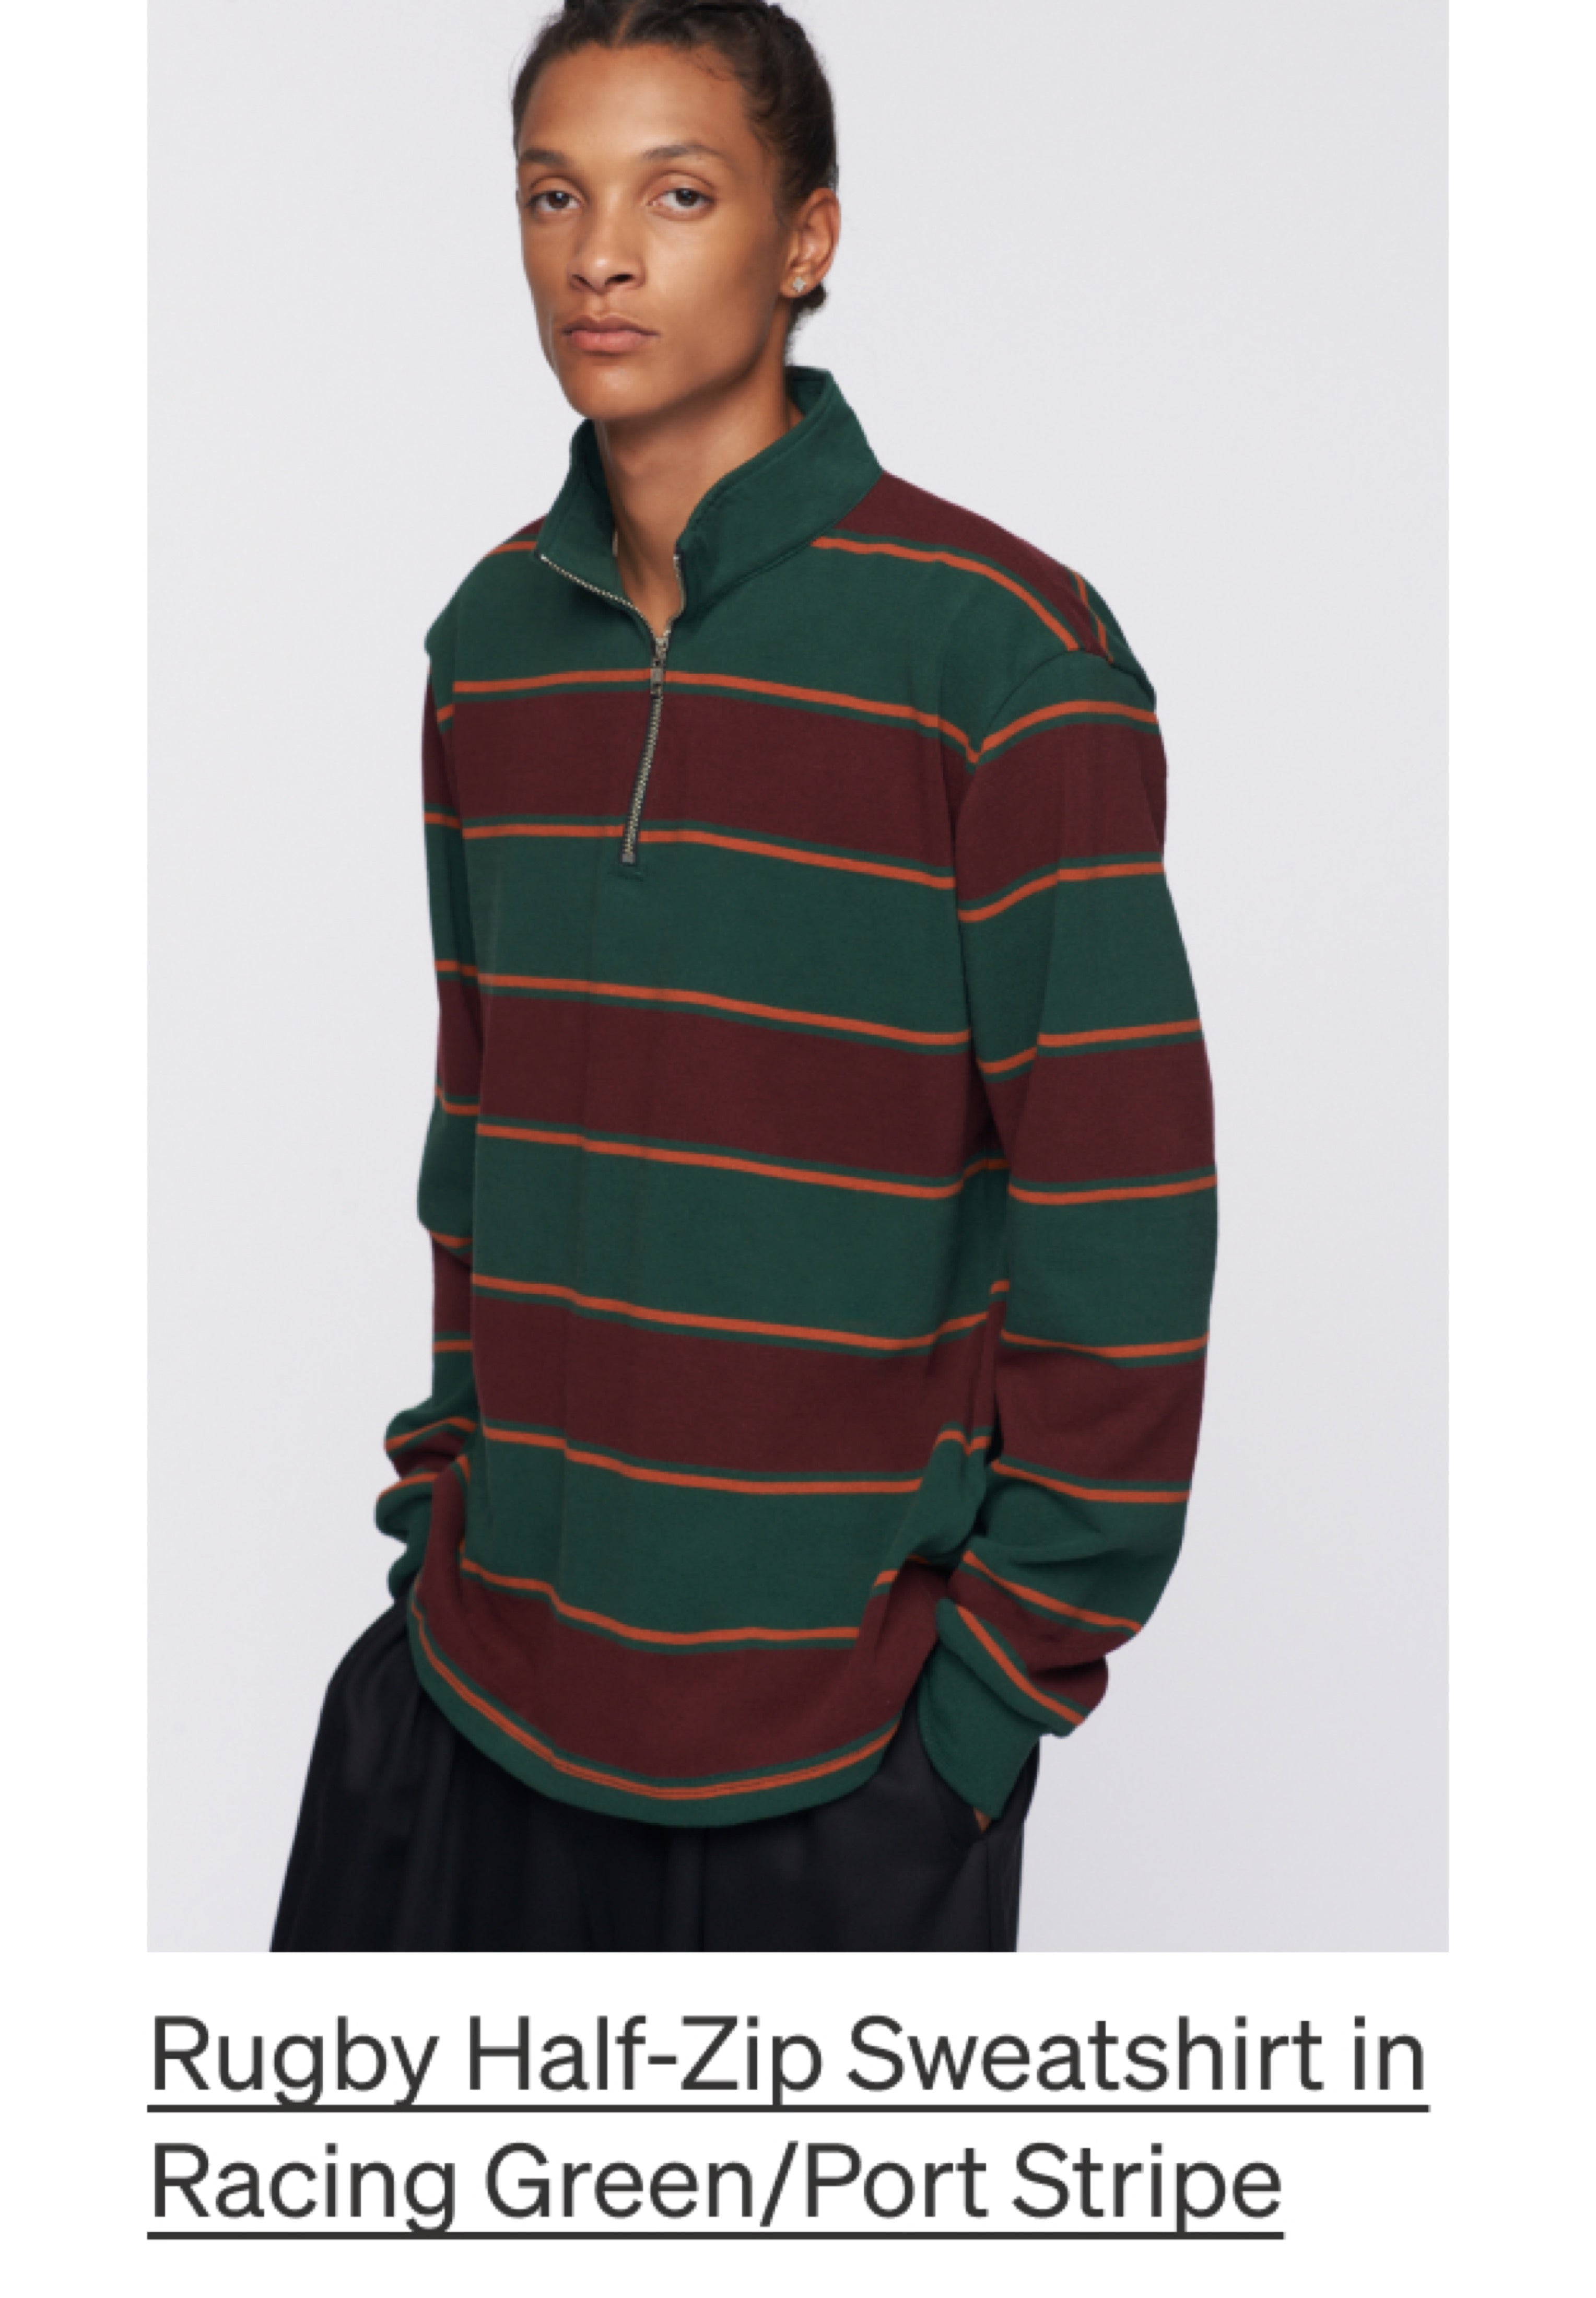 Rugby Half-Zip Sweatshirt in Racing Green/Port Stripe